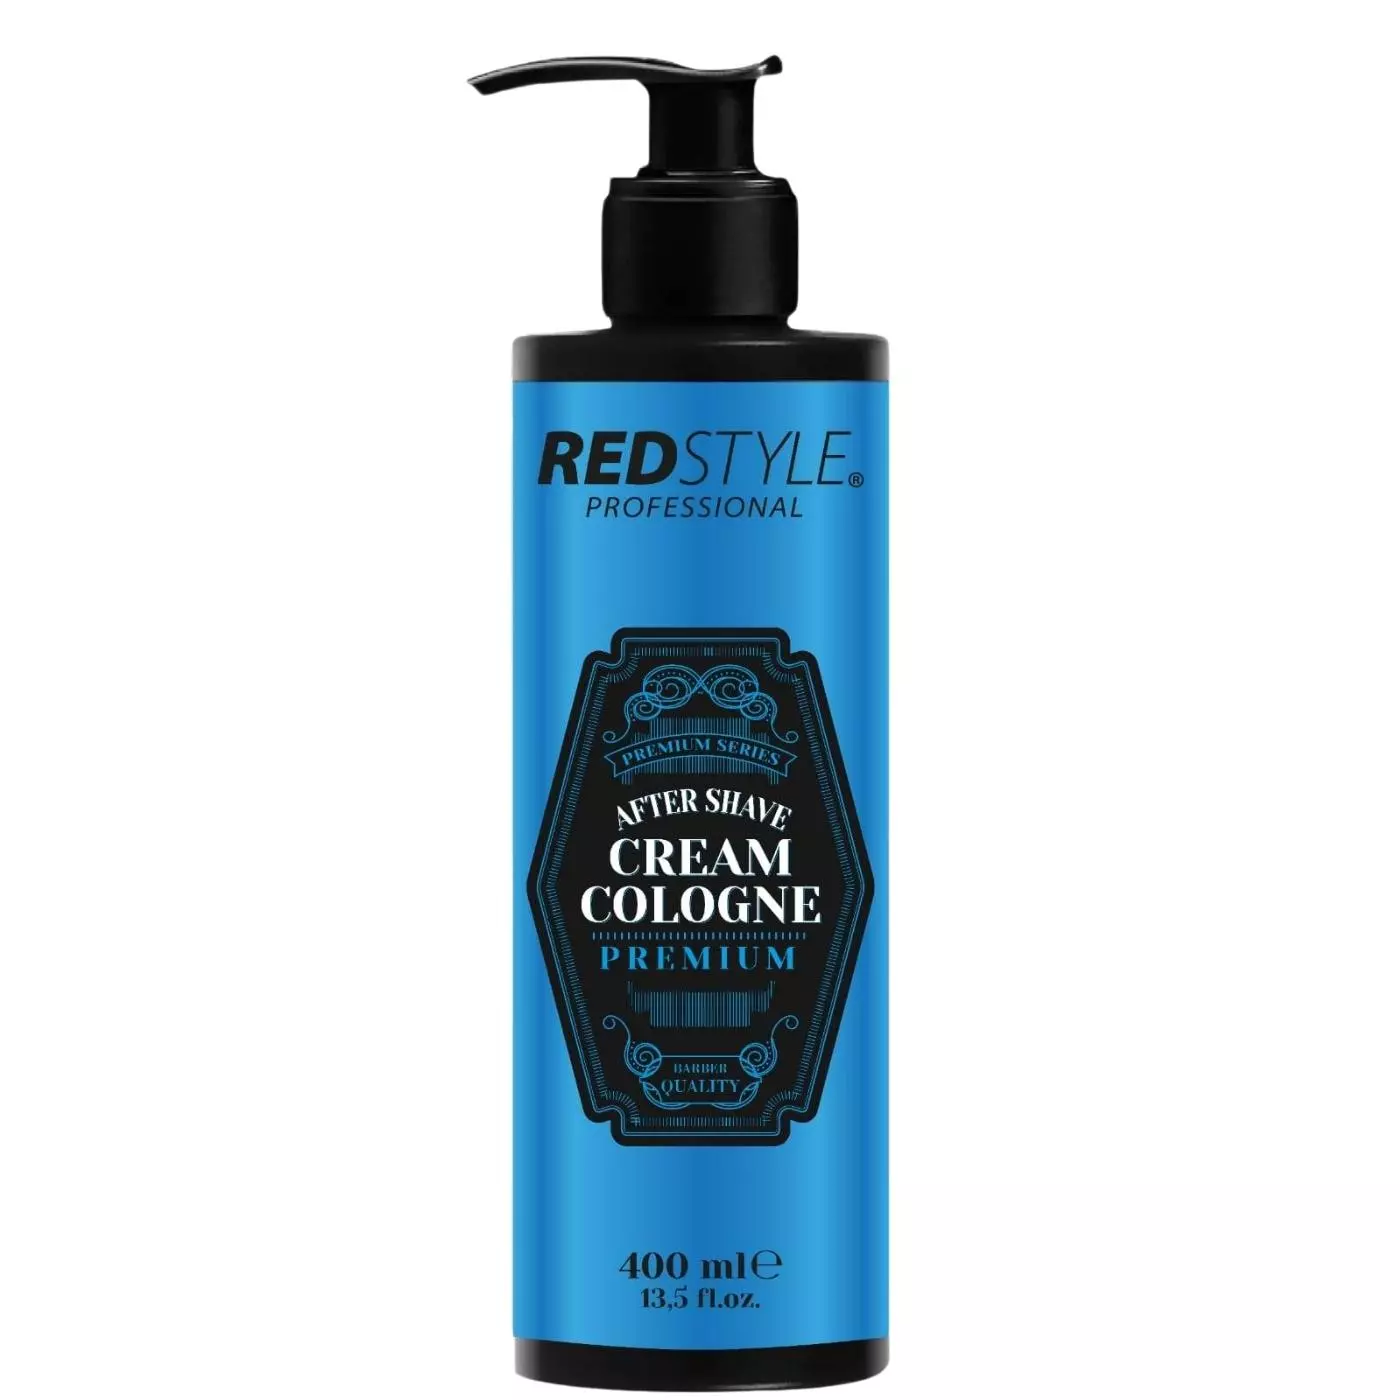 Redstyle Professional After Shave Cream Cologne - Balsam nach der Rasur, kÃ¼hlt und  pflegt   premium